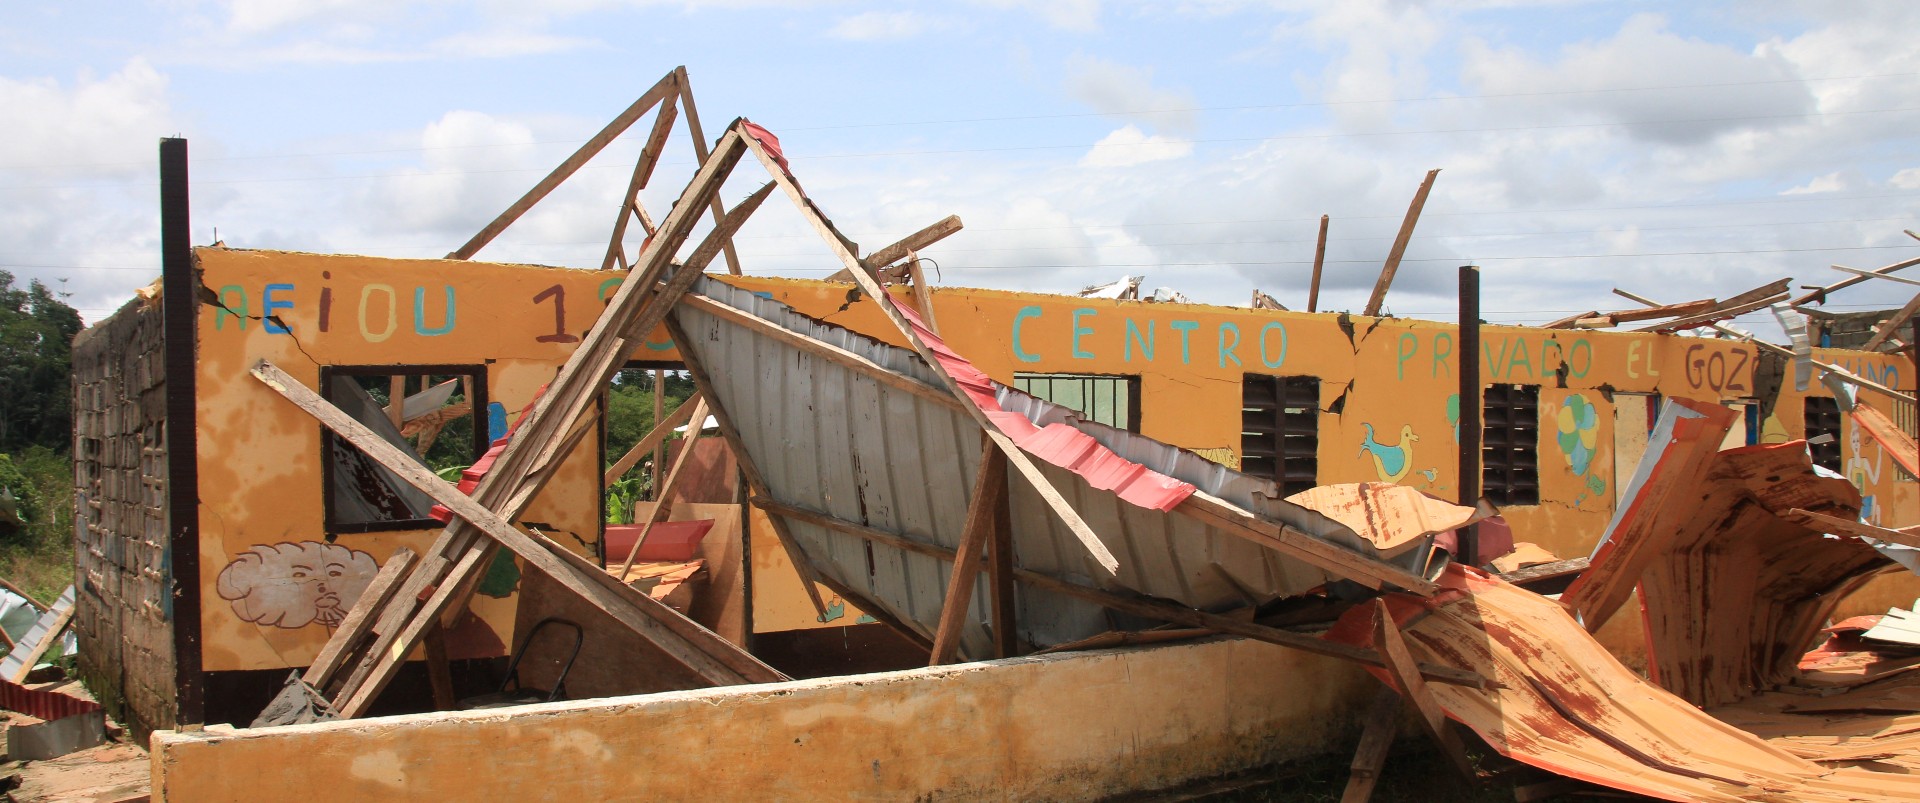 Cruz Roja Española apoya la misión de evaluación en Guinea Ecuatorial tras las explosiones en Bata